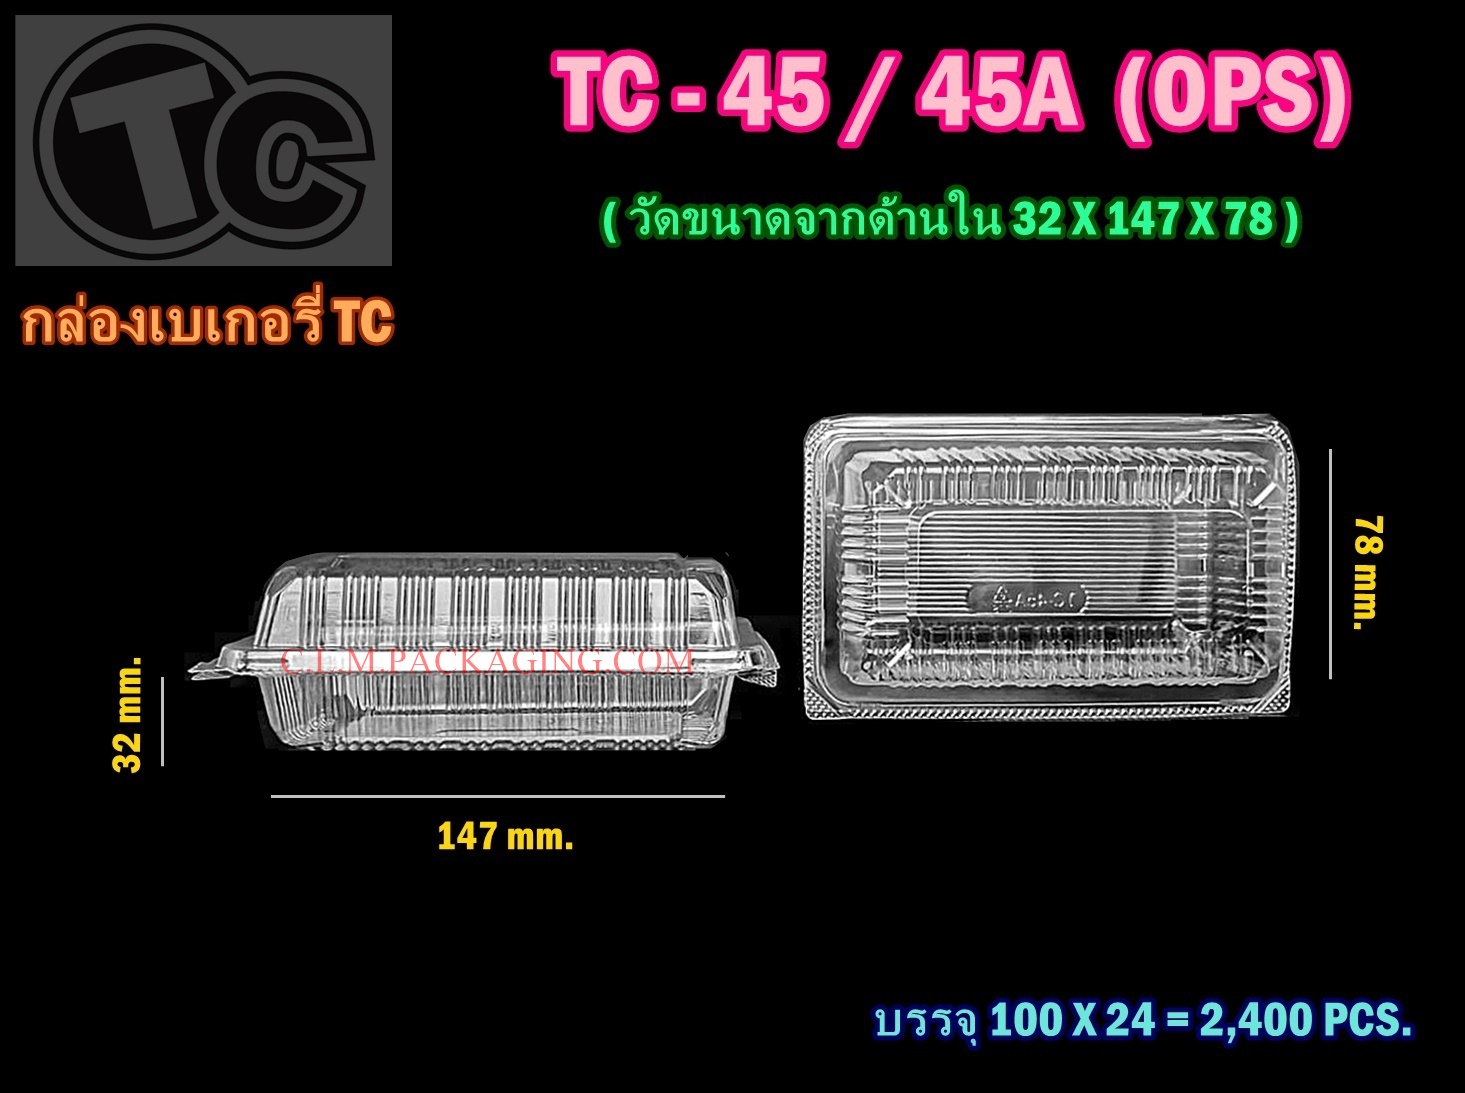 กล่องใส TC-45-A เนื้อ OPS ล็อกได้